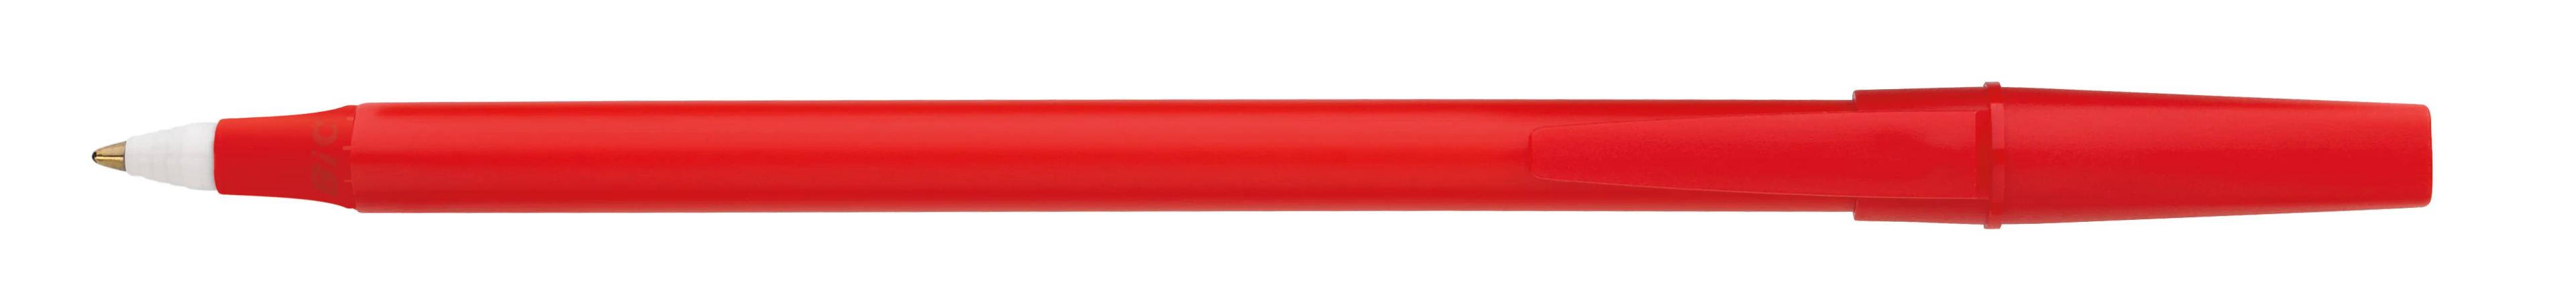 Corporate Promo Stick Pen 17 of 33